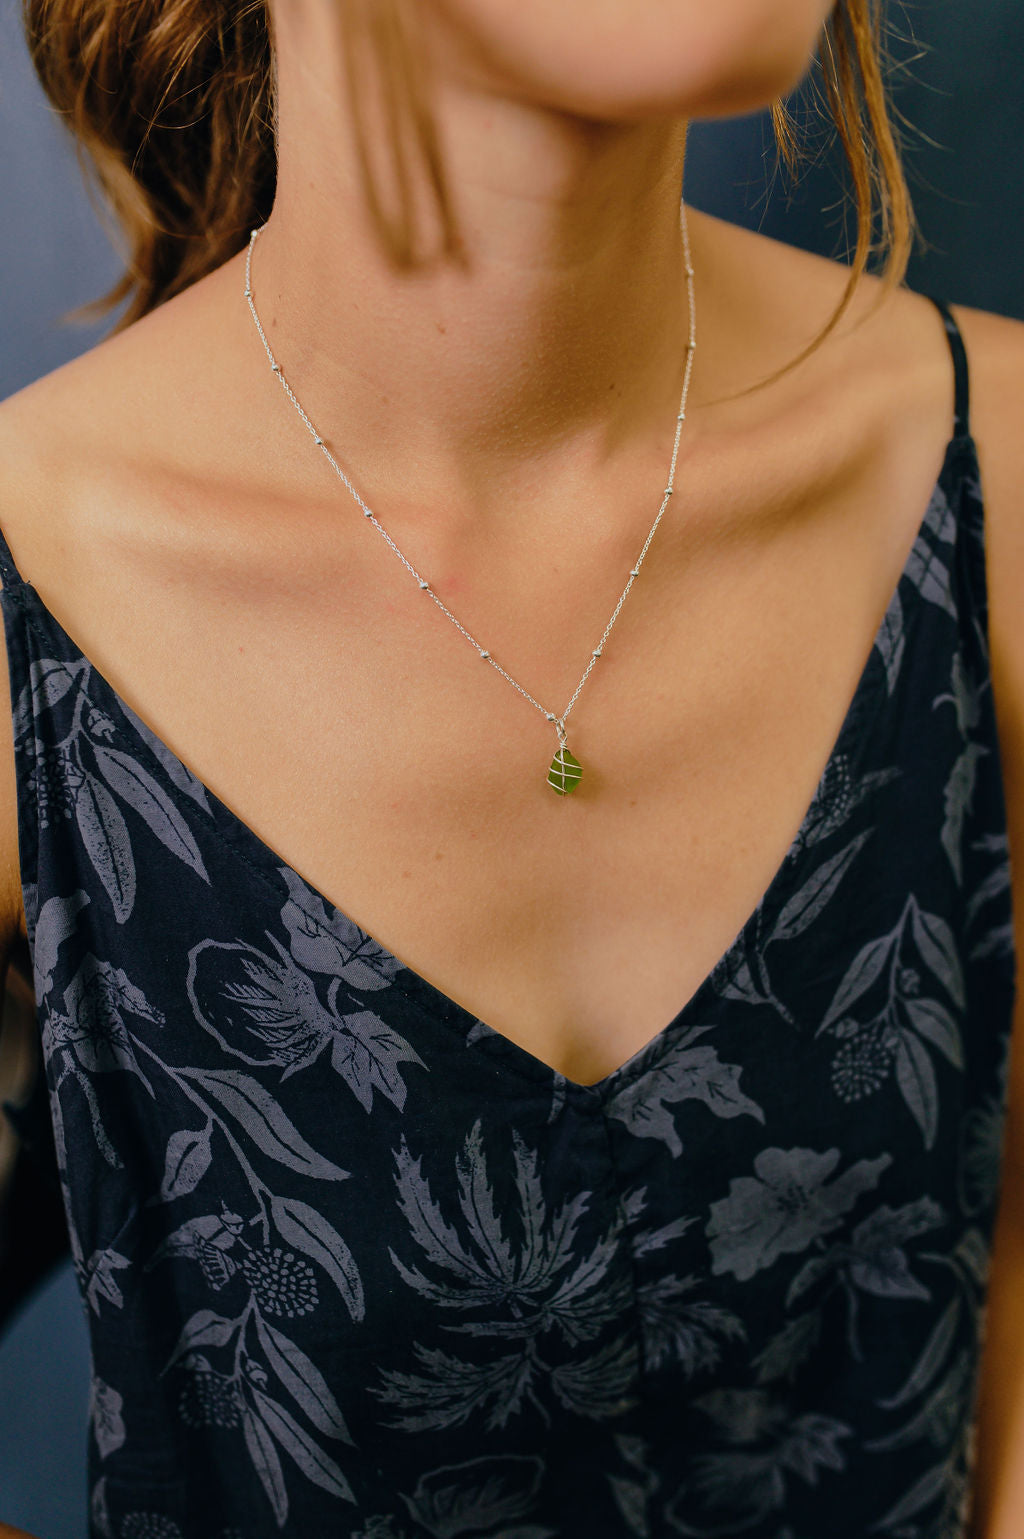 Eleanor Necklace in Silver & Bright Green